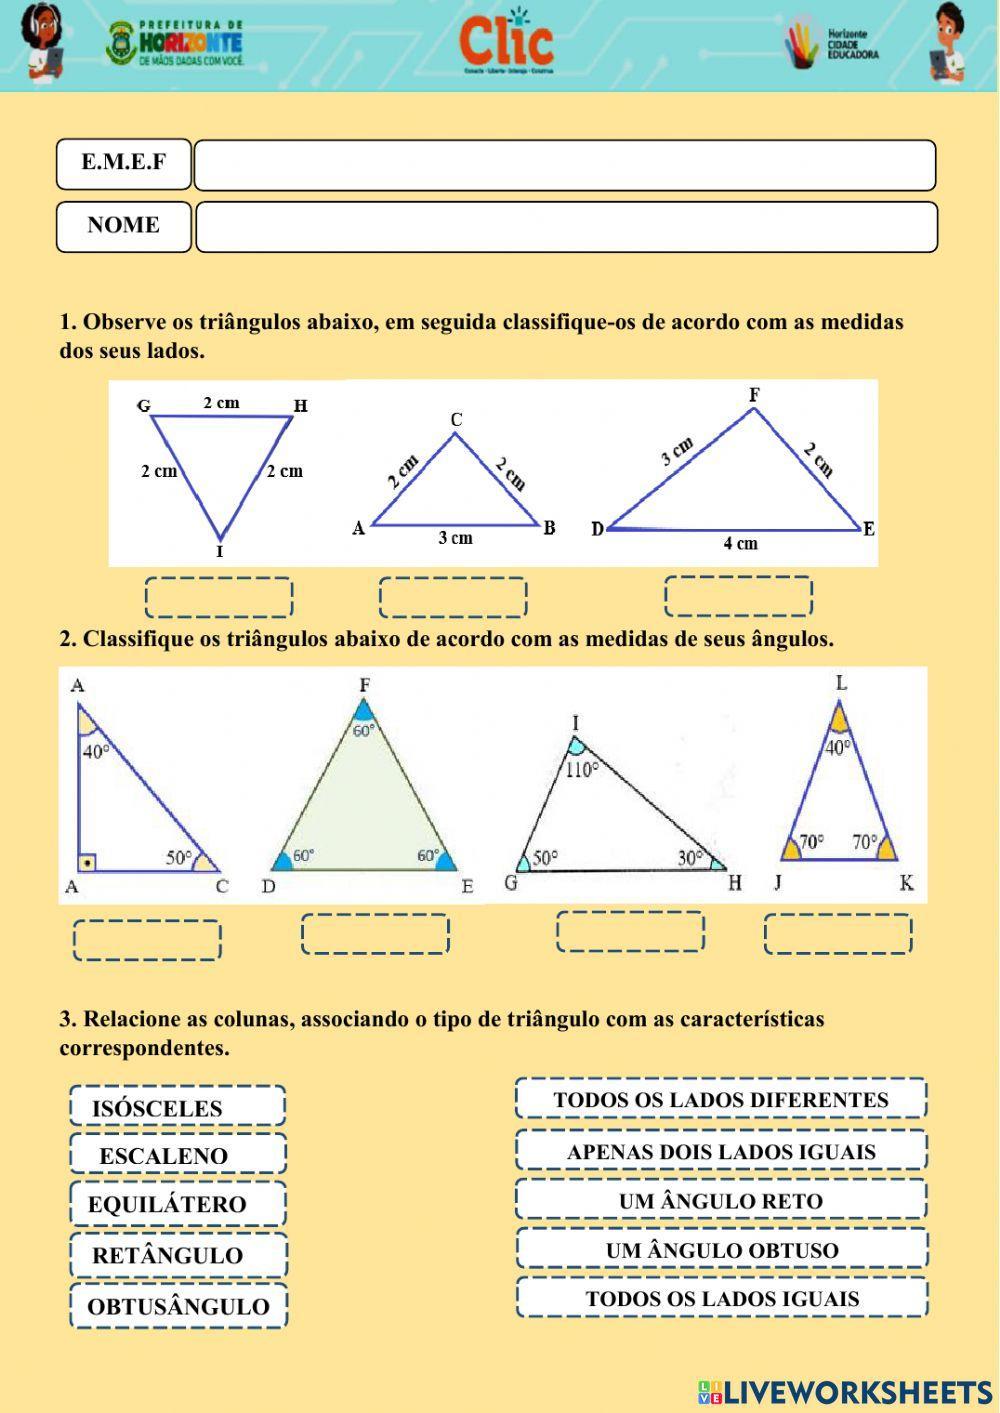 Tipos de triângulos